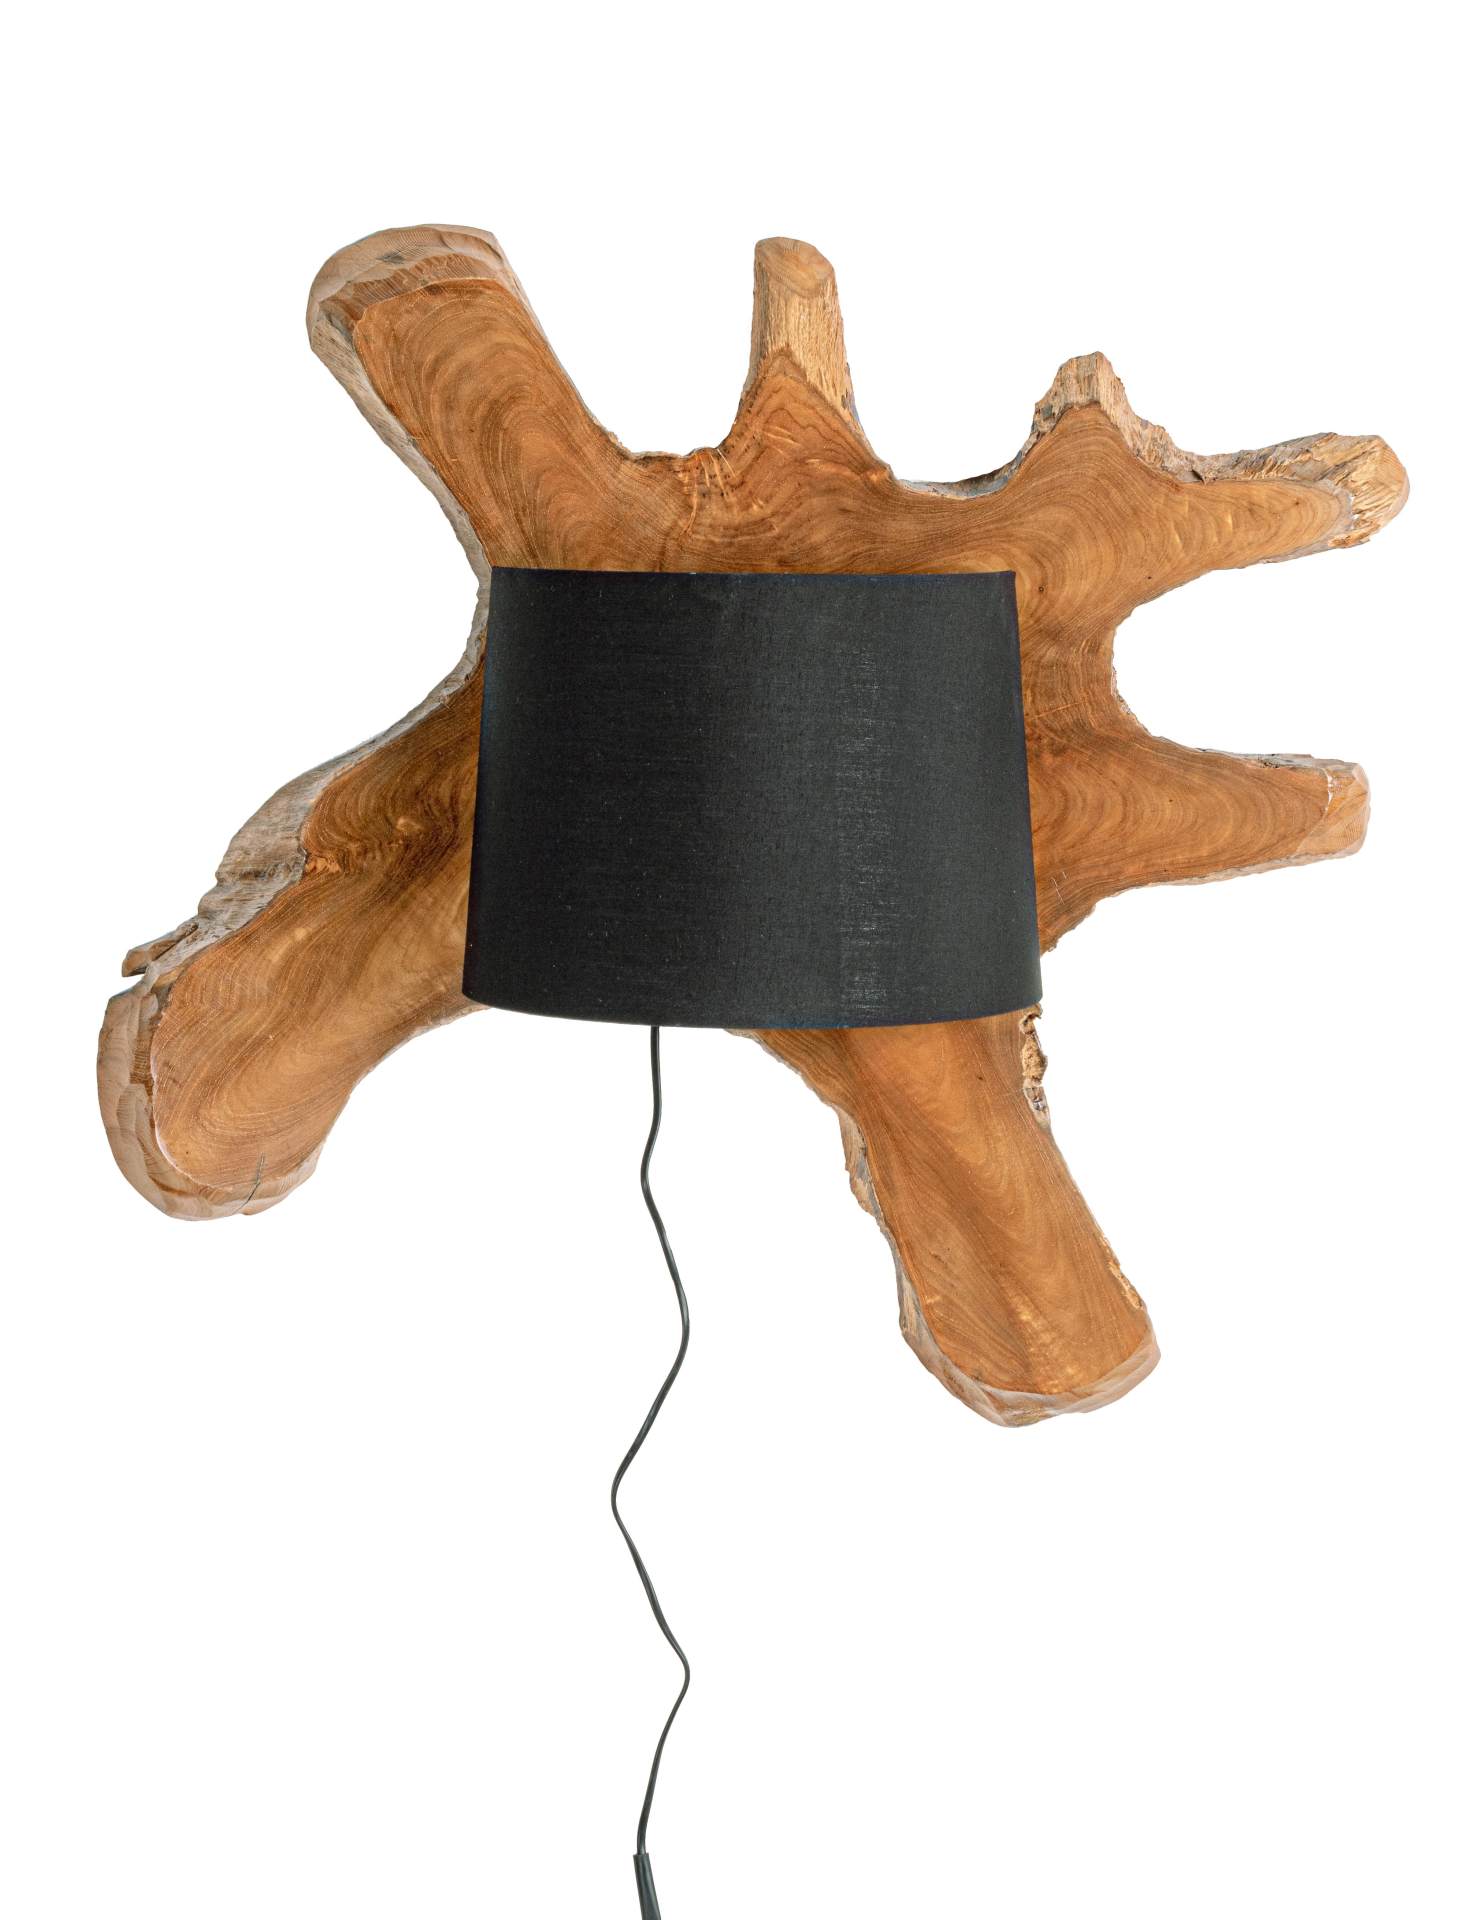 Die Wandleuchte Naga überzeugt mit ihrem klassischen Design. Gefertigt wurde sie aus recyceltem Teakholz, welches einen natürlichen Farbton besitzt. Der Lampenschirm ist aus Baumwolle und hat eine schwarze Farbe. Die Lampe besitzt eine Höhe von 22 cm.